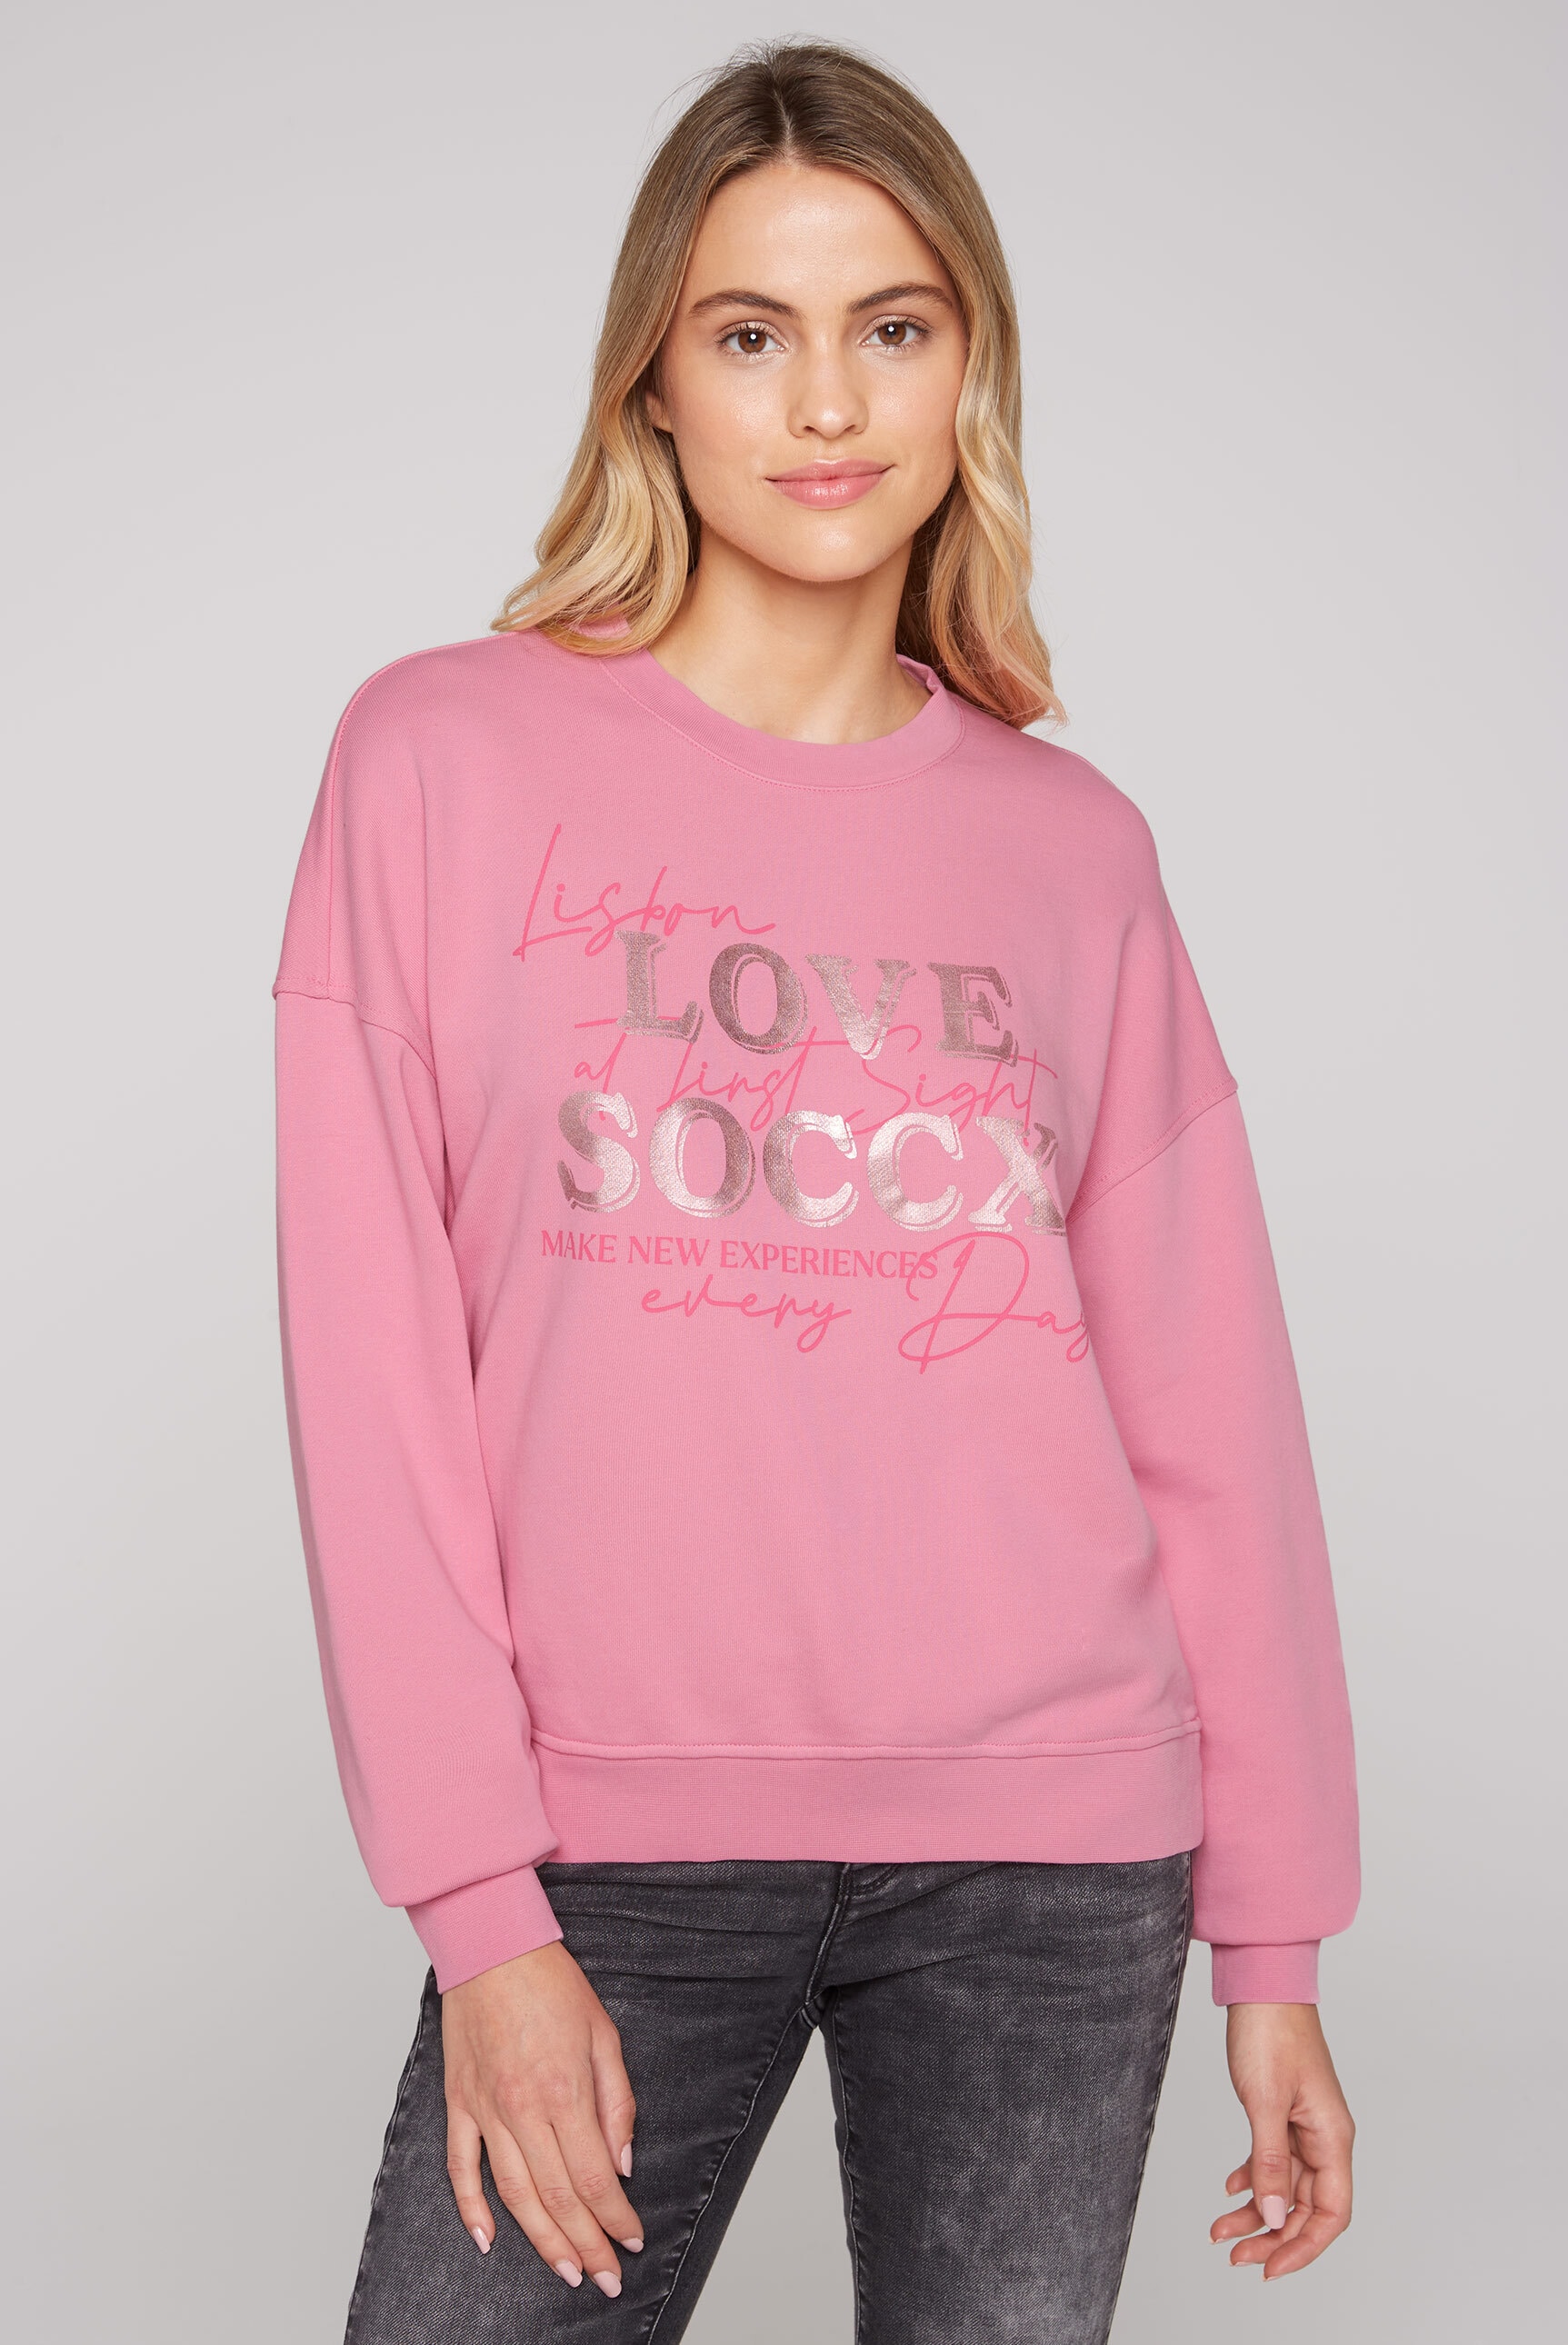 SOCCX Sweater, aus Baumwolle